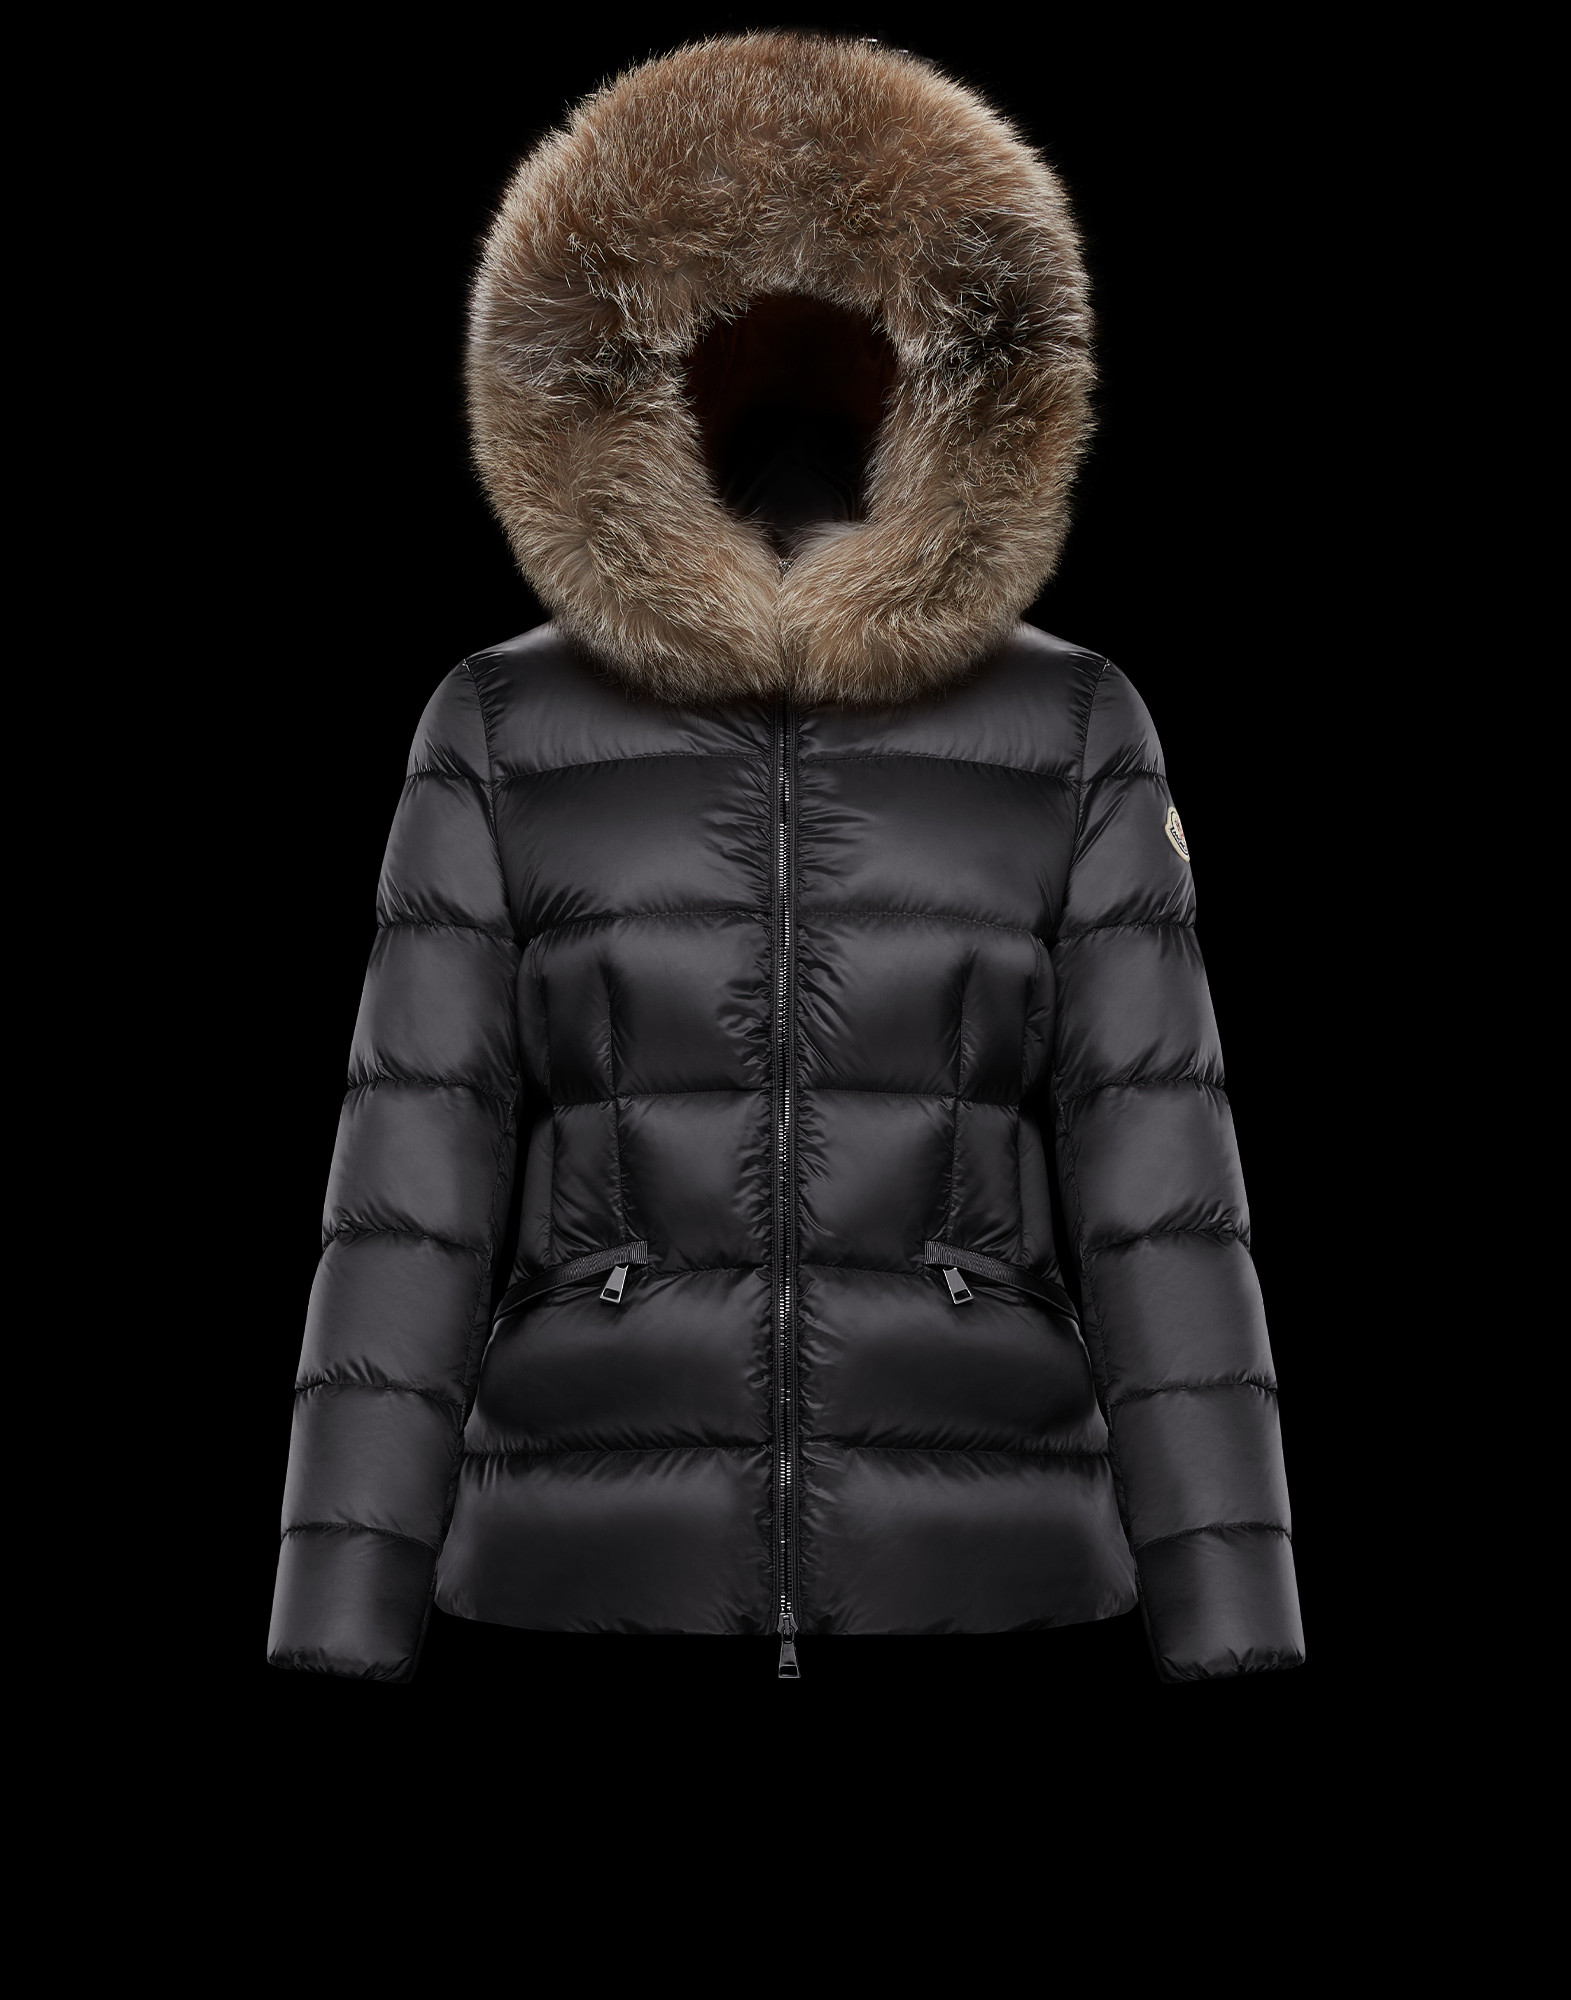 moncler vest with fur